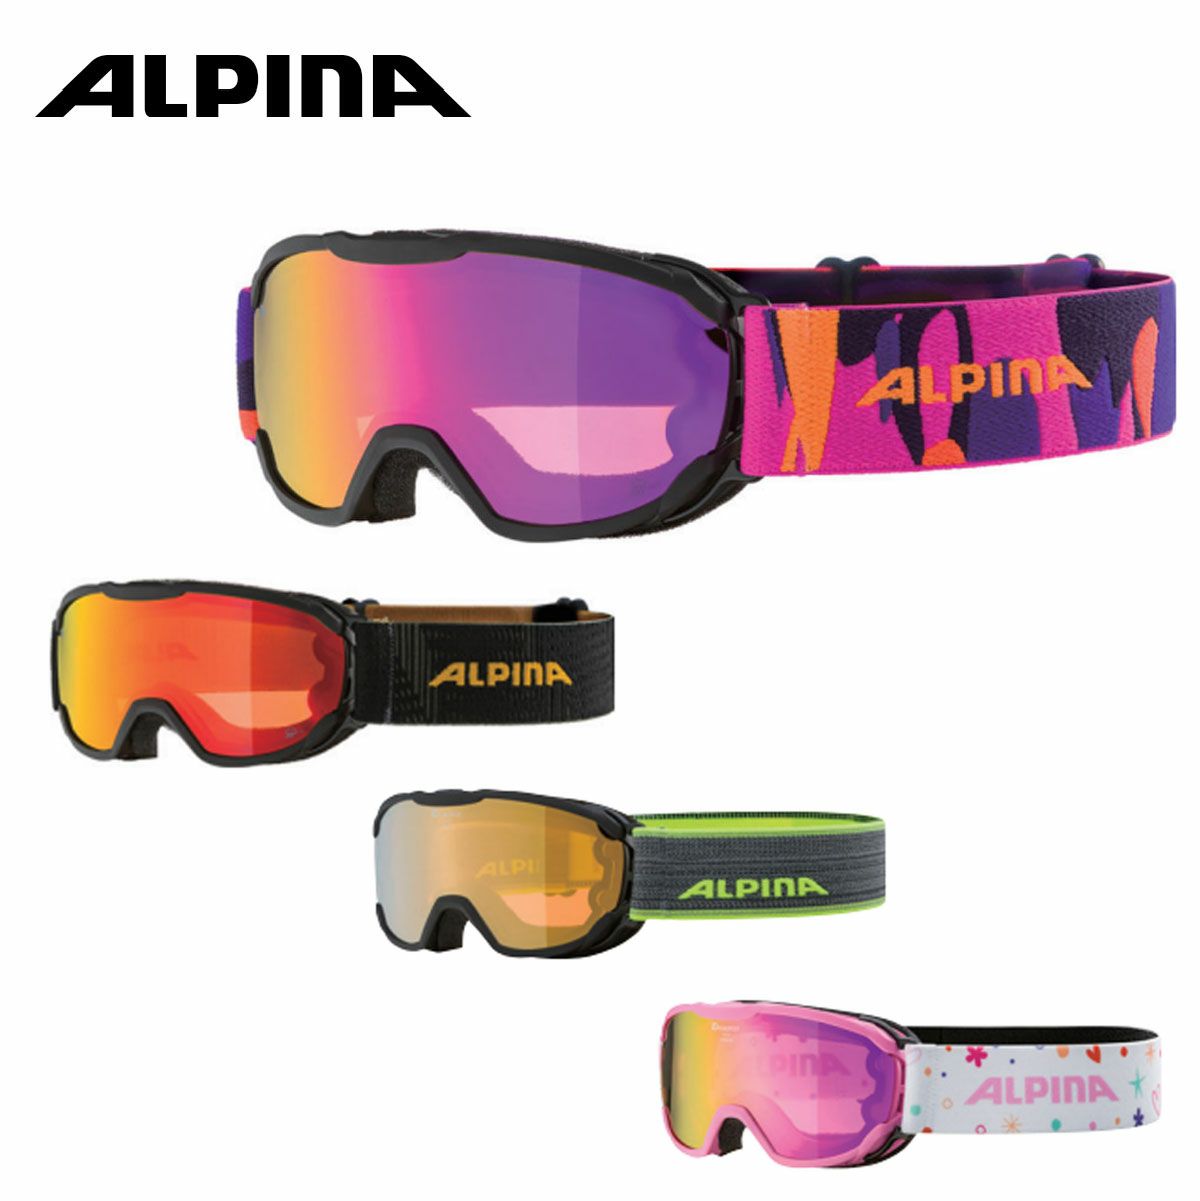 ALPINA(アルピナ) スキースノーボードゴーグル ユニセックス 偏光レンズ くもり止め メガネ使用可 NAKISKA QH